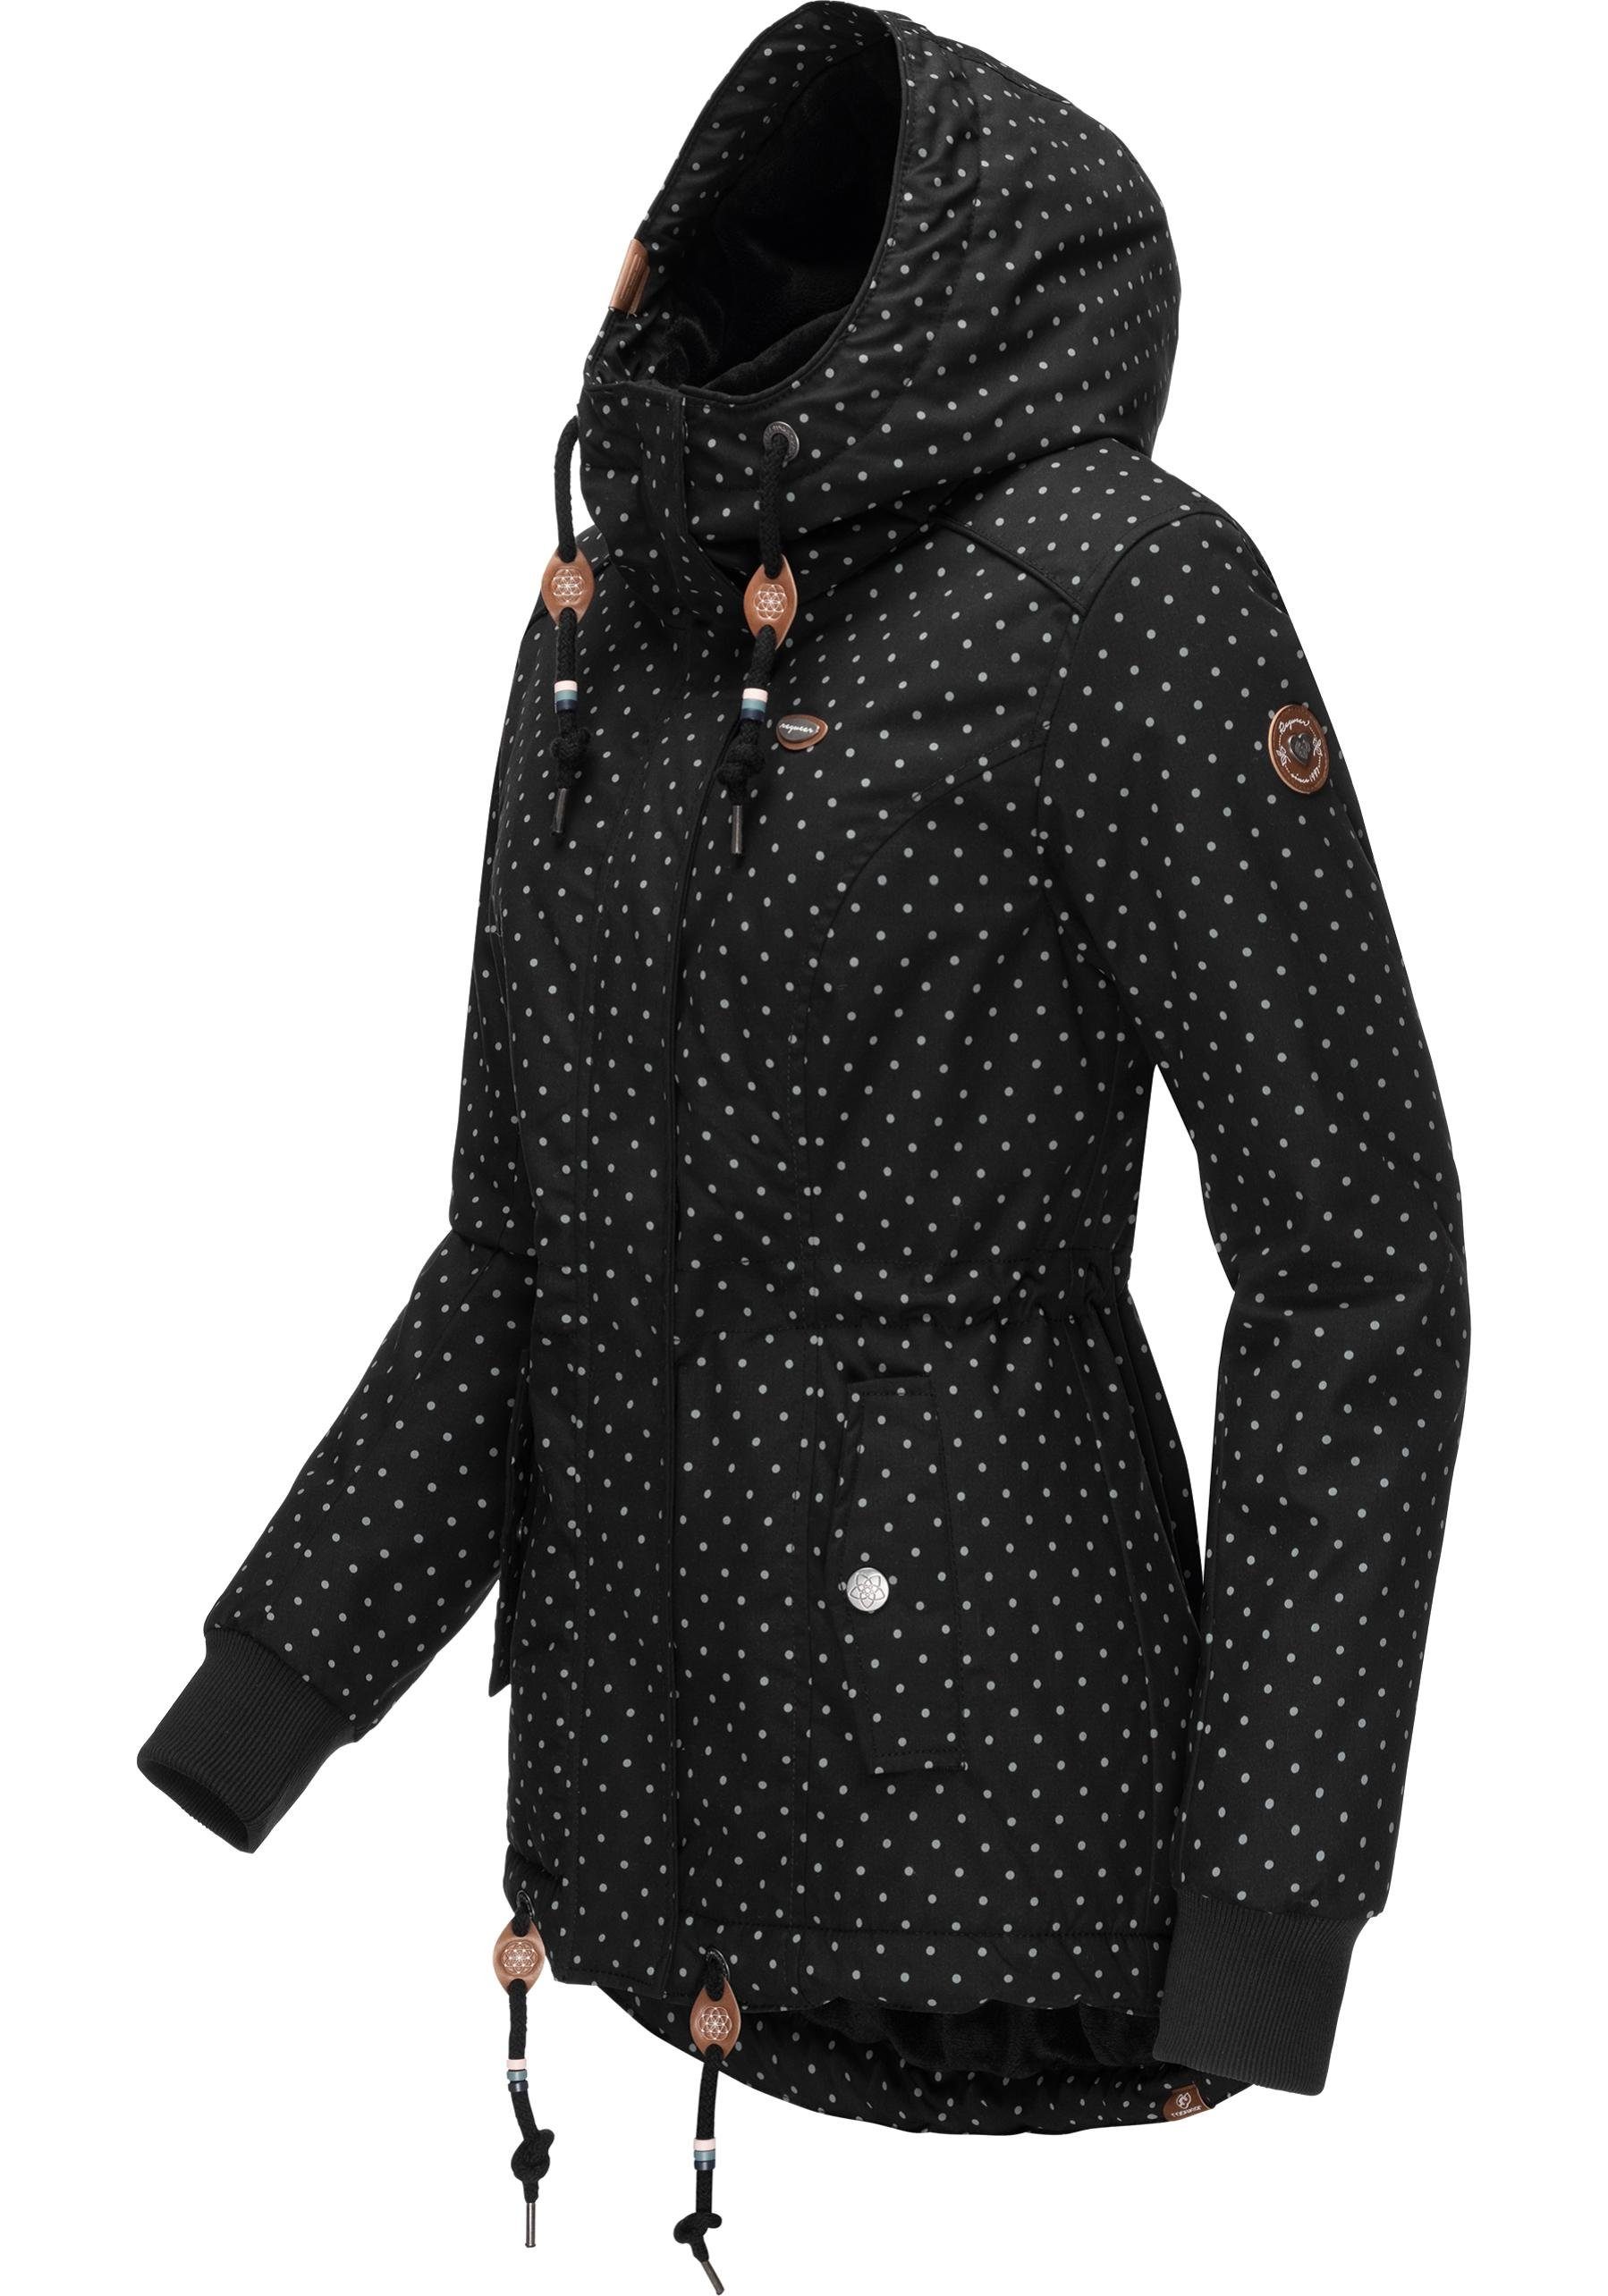 Ragwear Winterjacke black Kapuze mit Dots Outdoorjacke Intl. Winter Danka stylische